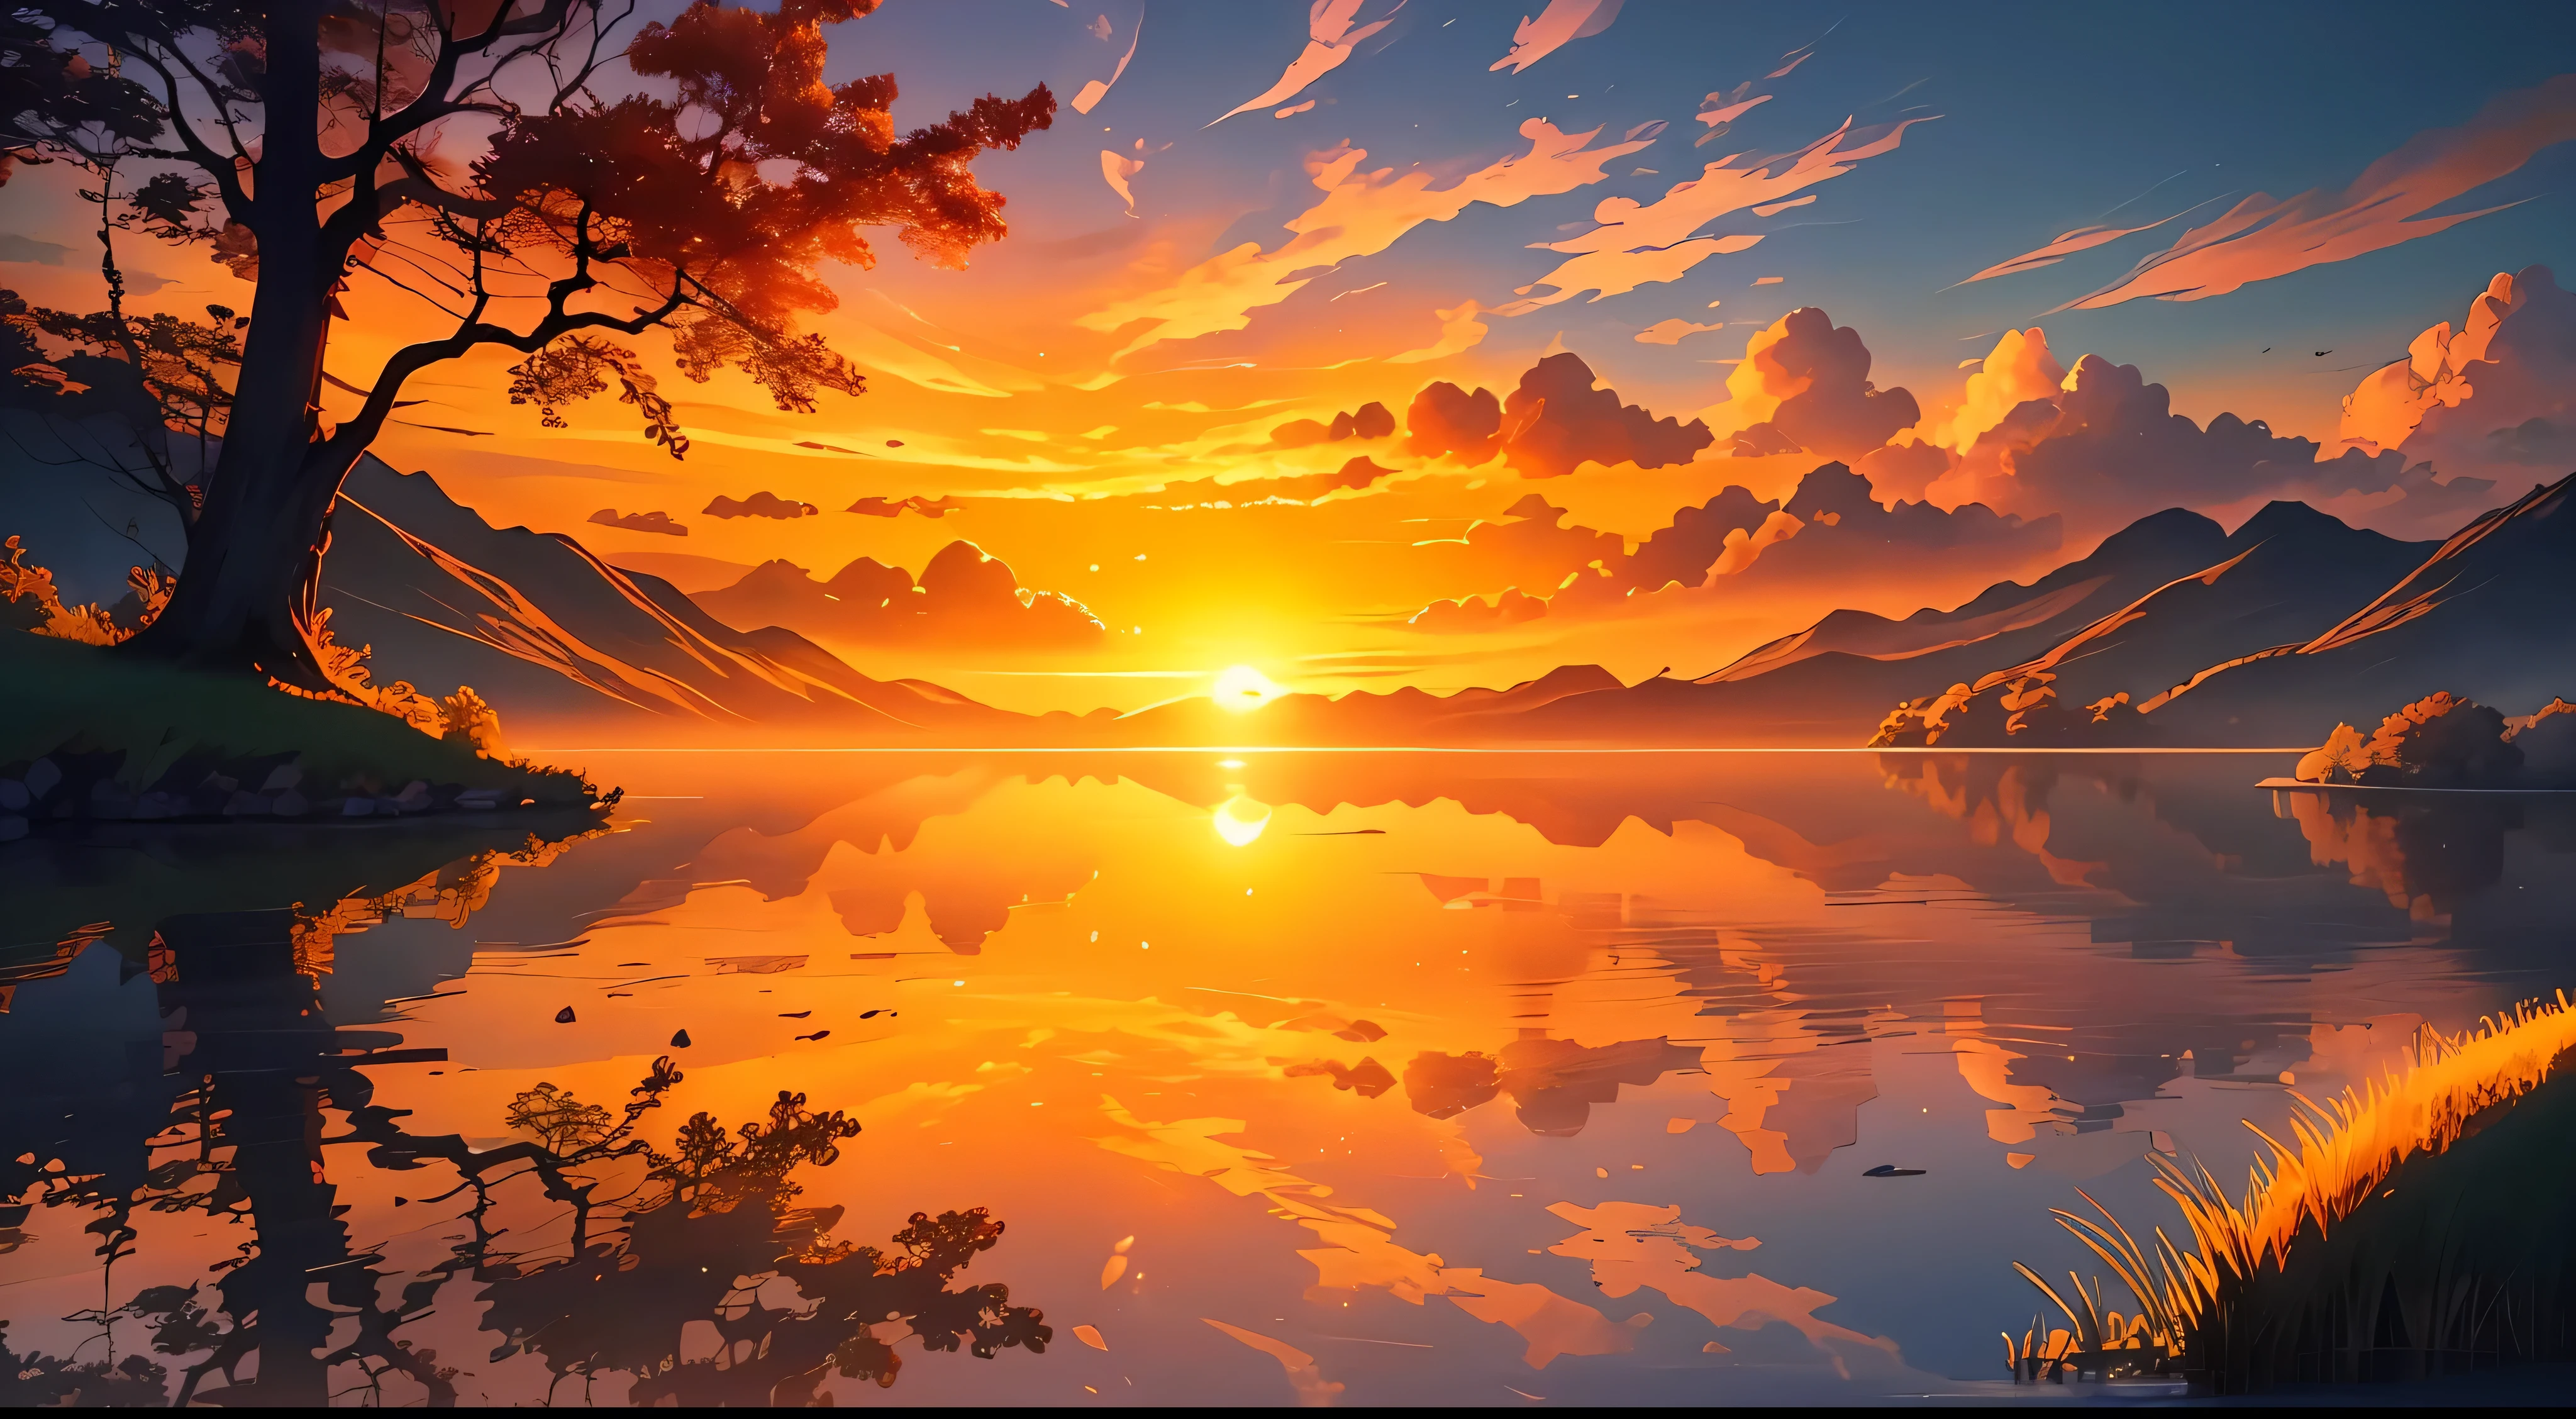 一幅描绘宁静祥和的风景上灿烂日出的图像